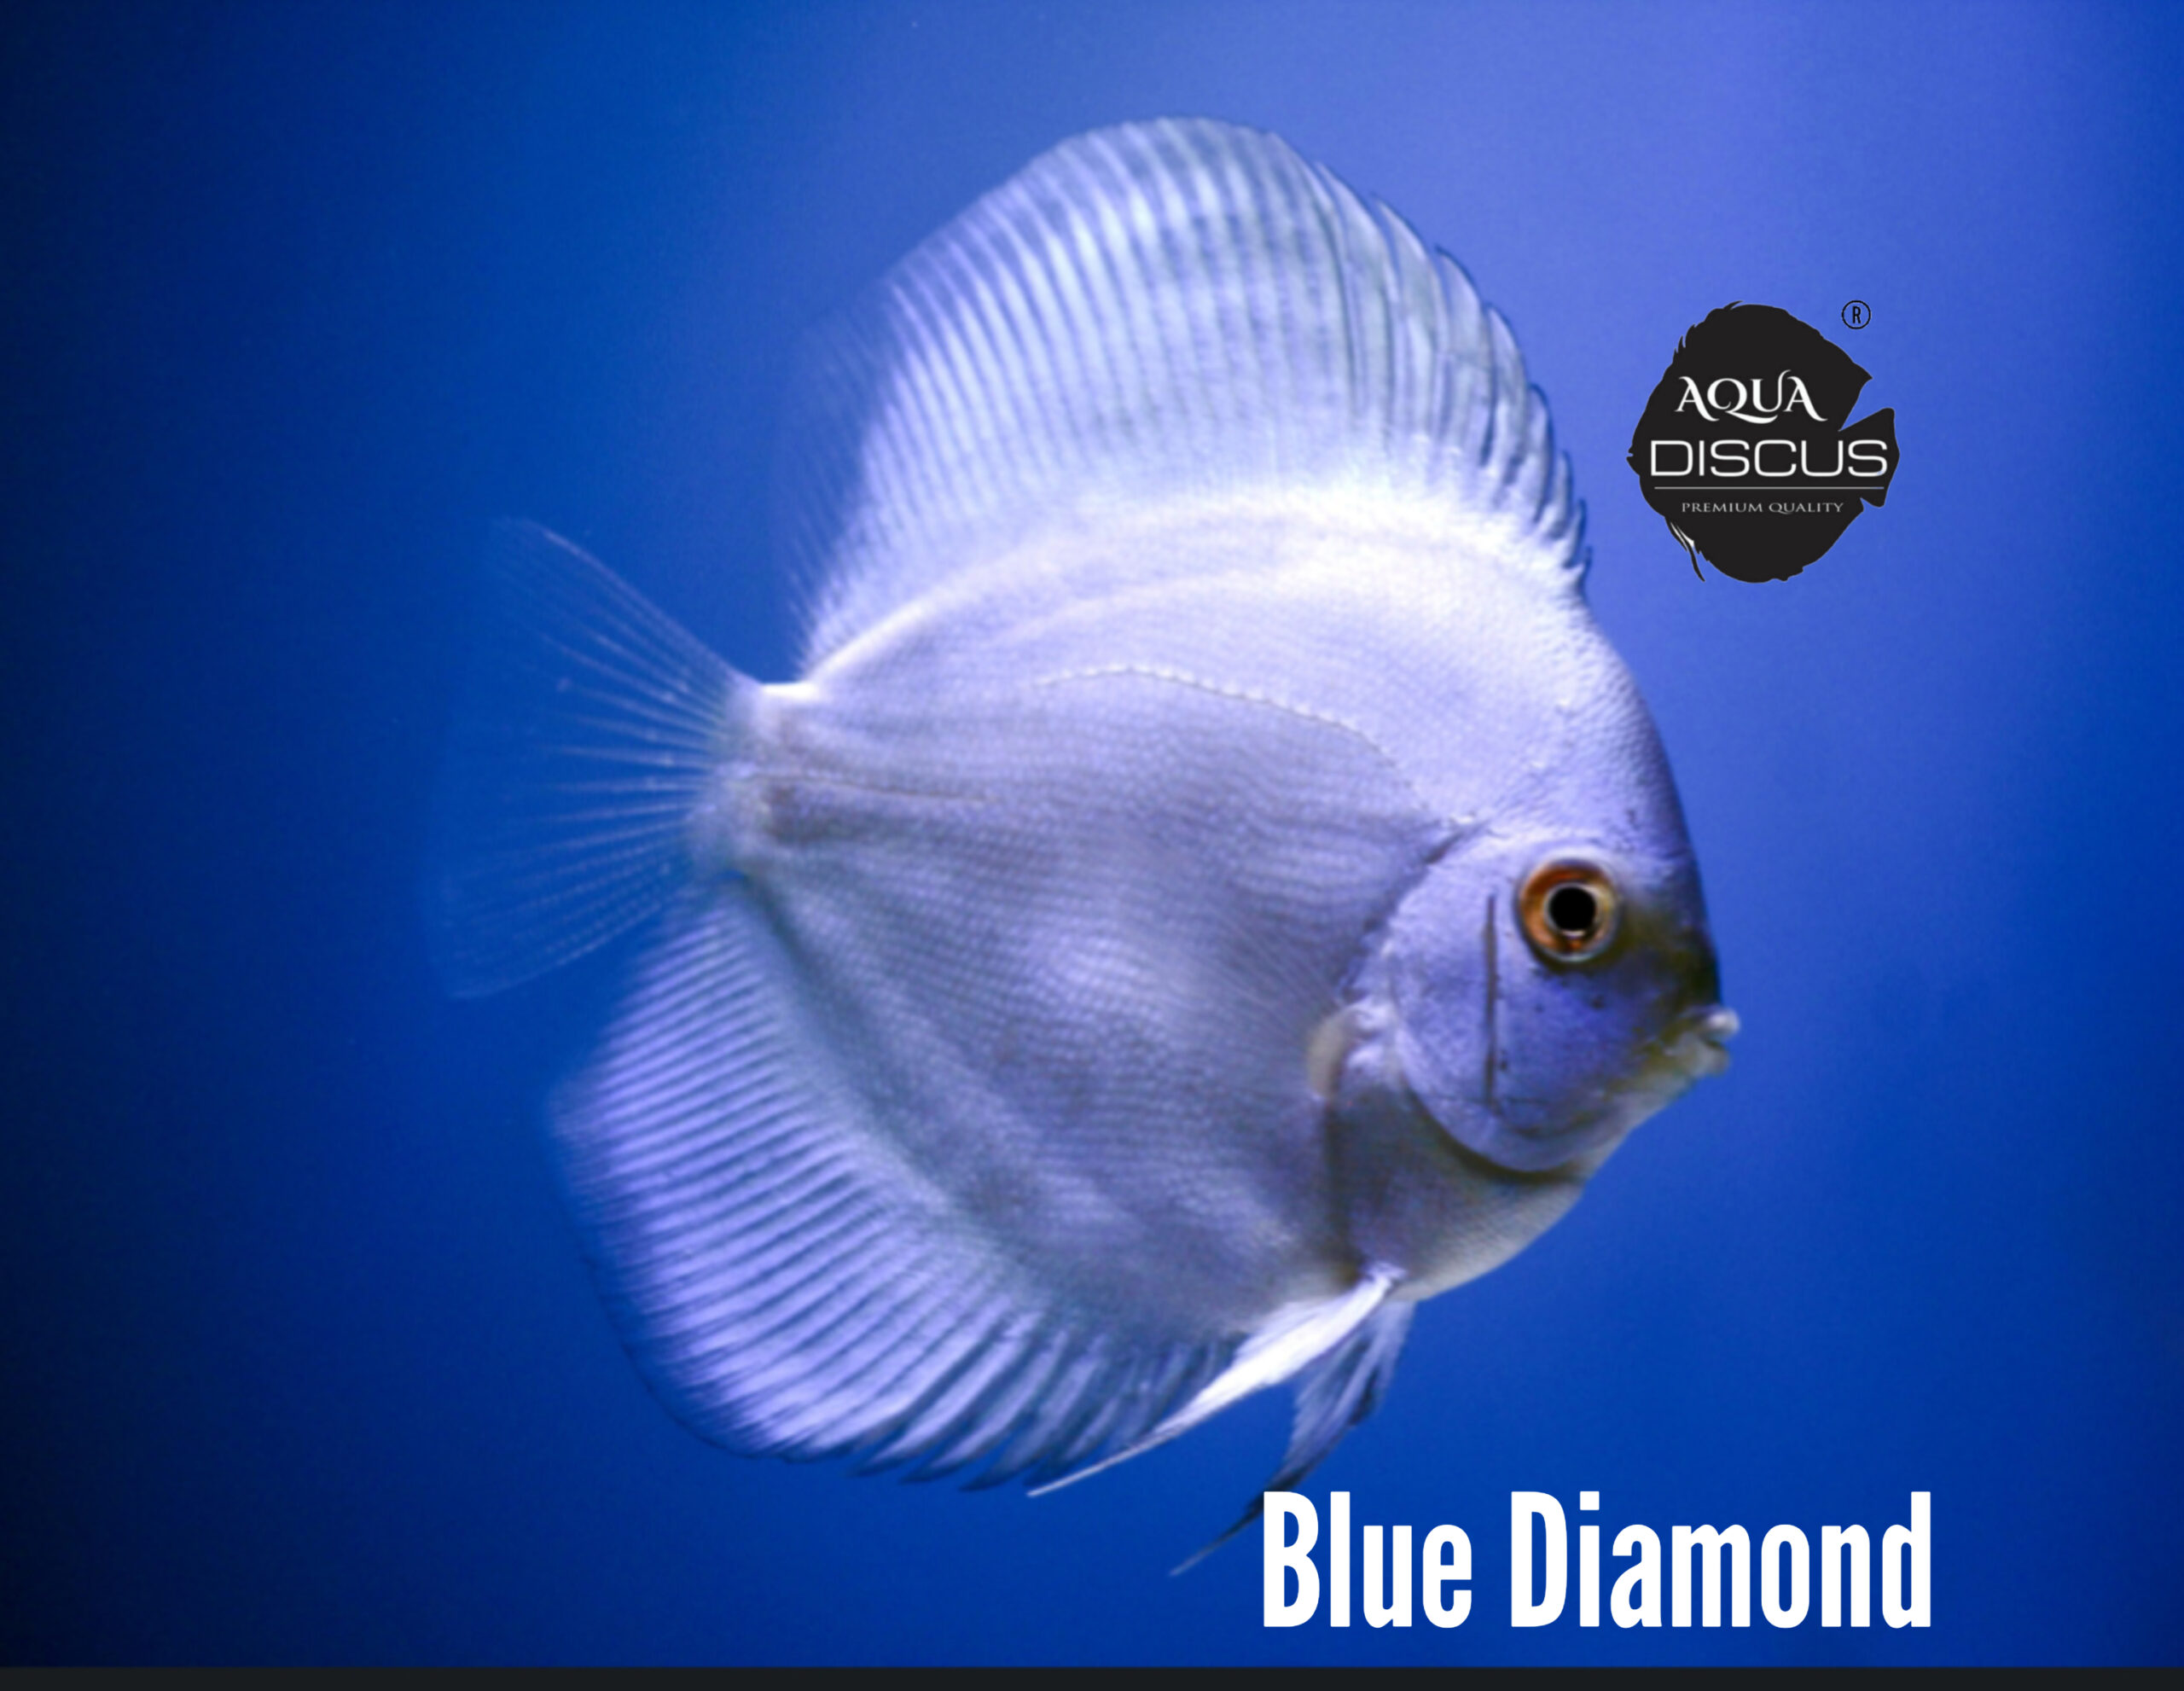 Blue Diamond Discus – Aqua Discus India